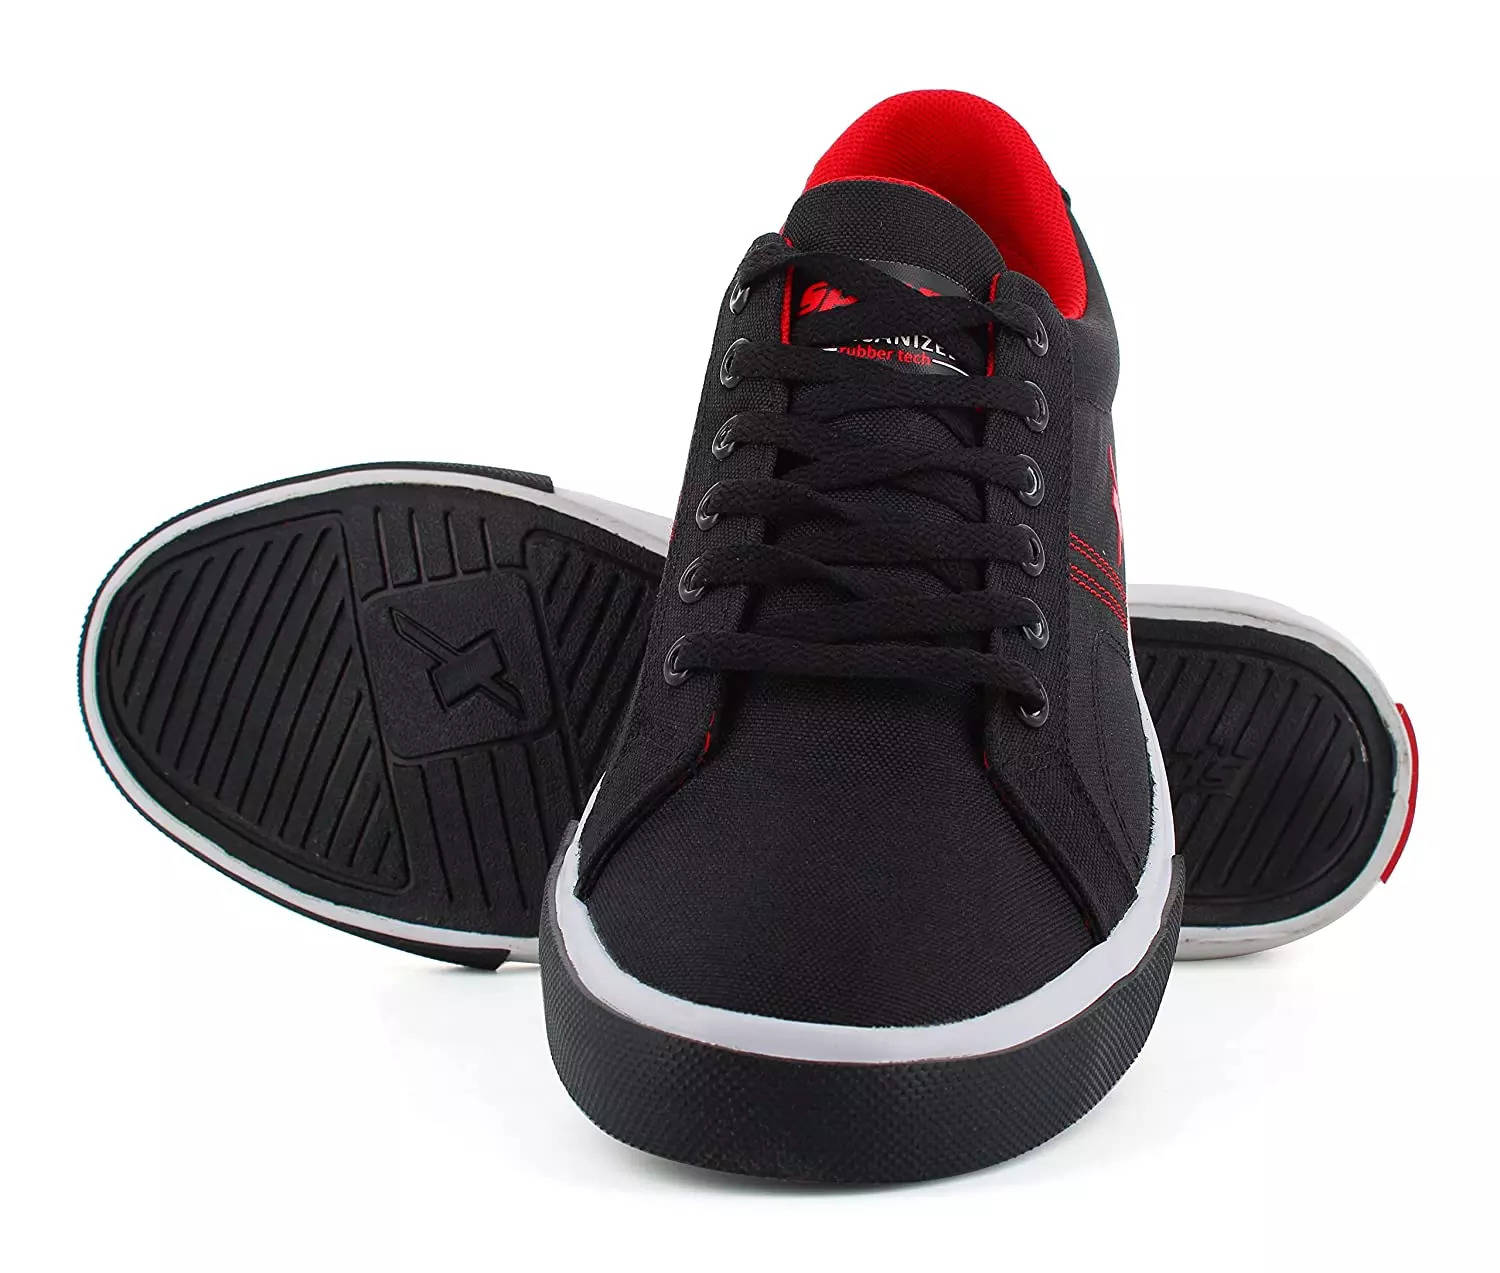 Levis Men's Two-Horse Flip-Flops Sandals Shoes Embossed Logo Black | eBay